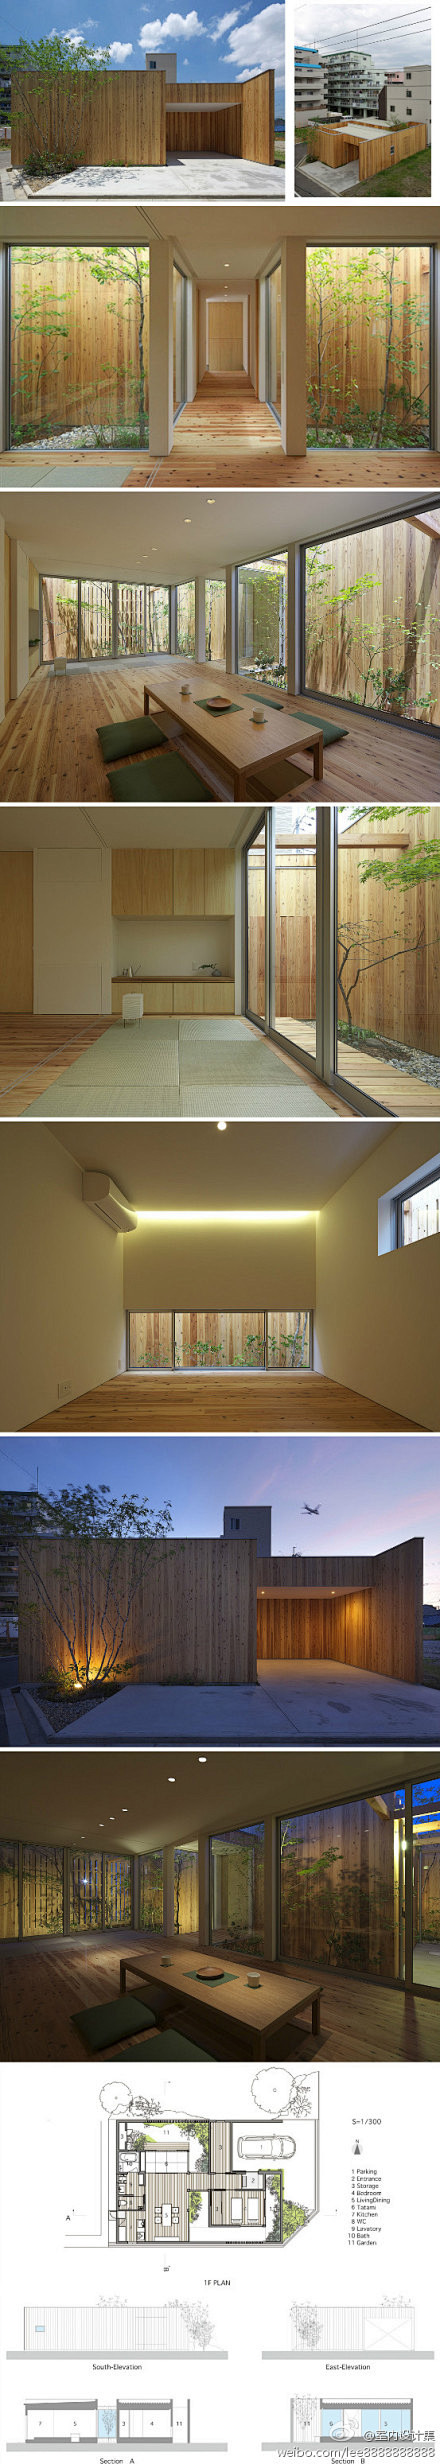 日本大阪的原木住宅空间设计 ……by A...